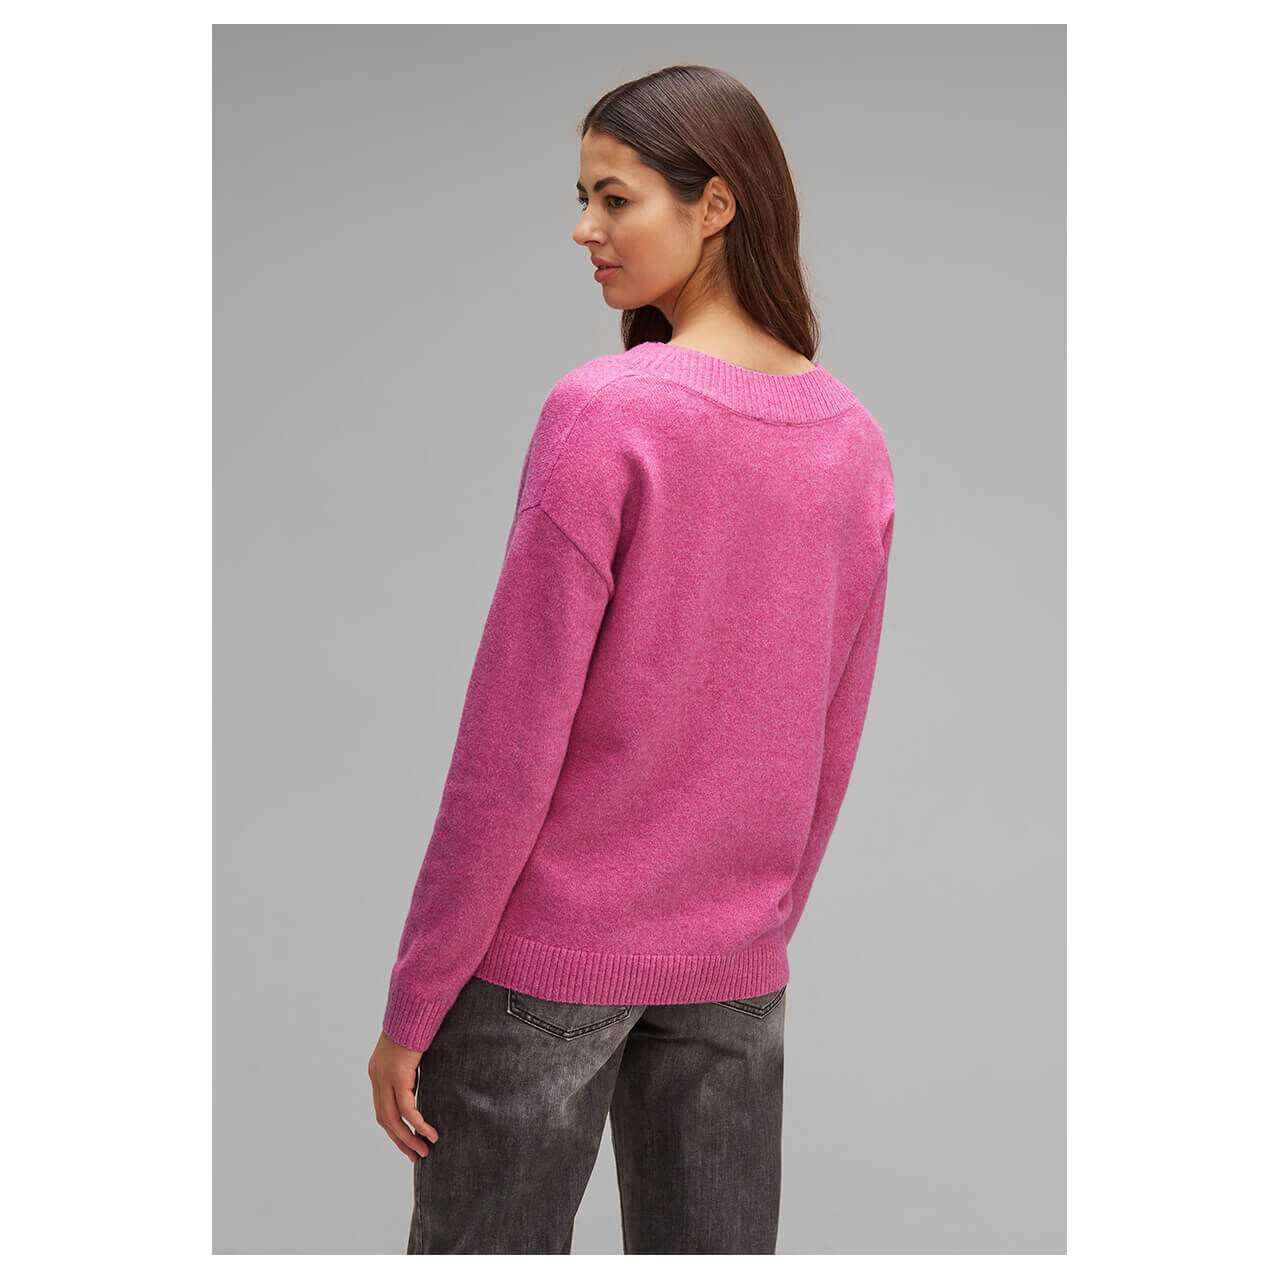 Street One Damen Pullover V-neck Sweater cozy pink melange